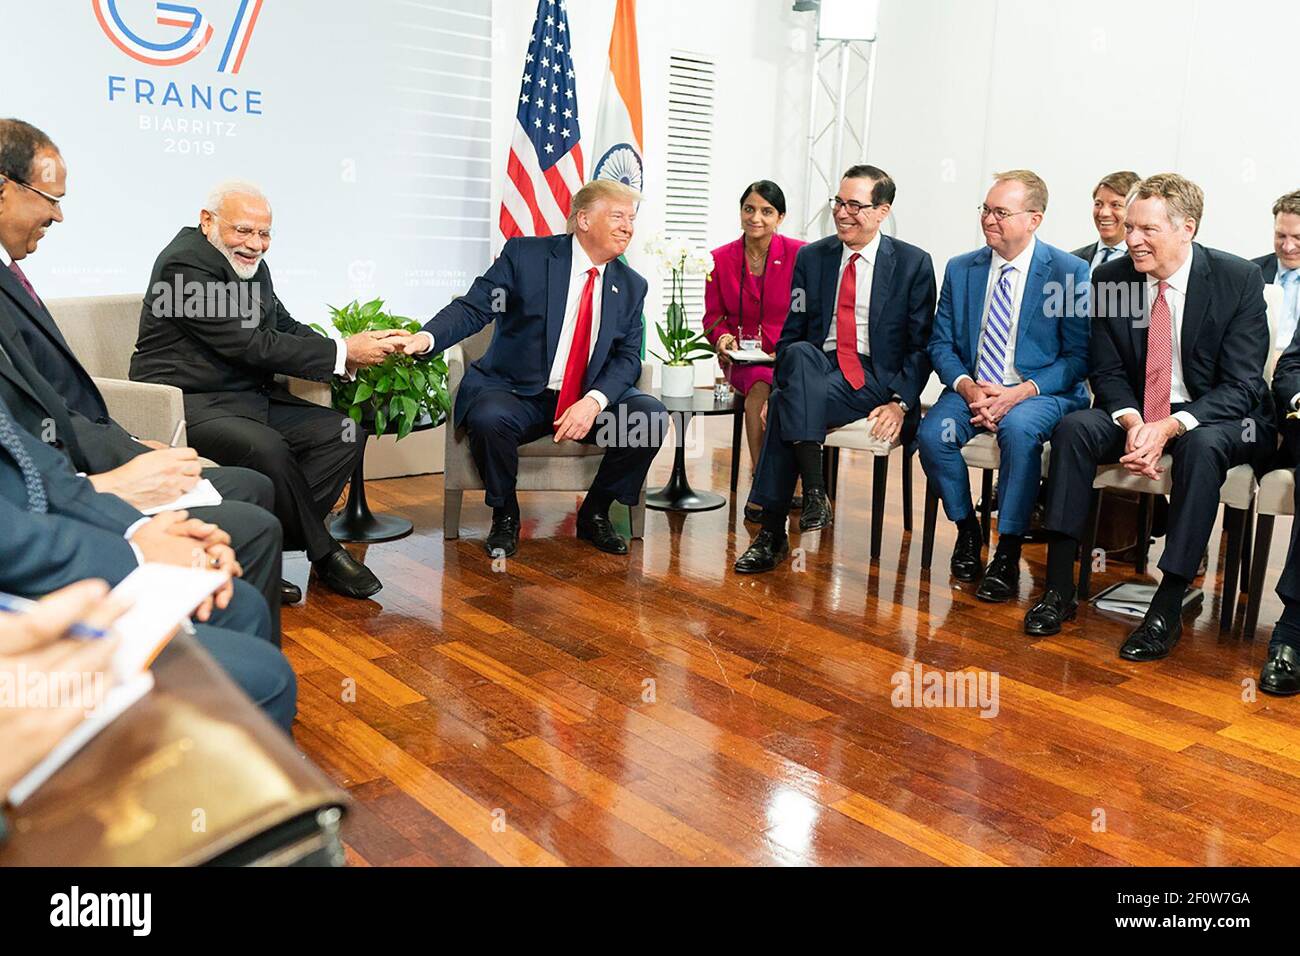 Le Président Donald Trump participe à une réunion bilatérale avec le Premier ministre de la République de l'Inde Narendra Modi au Centre de congrès Bellevue le lundi 26 2019 août à Biarritz, site du Sommet du G7. Banque D'Images